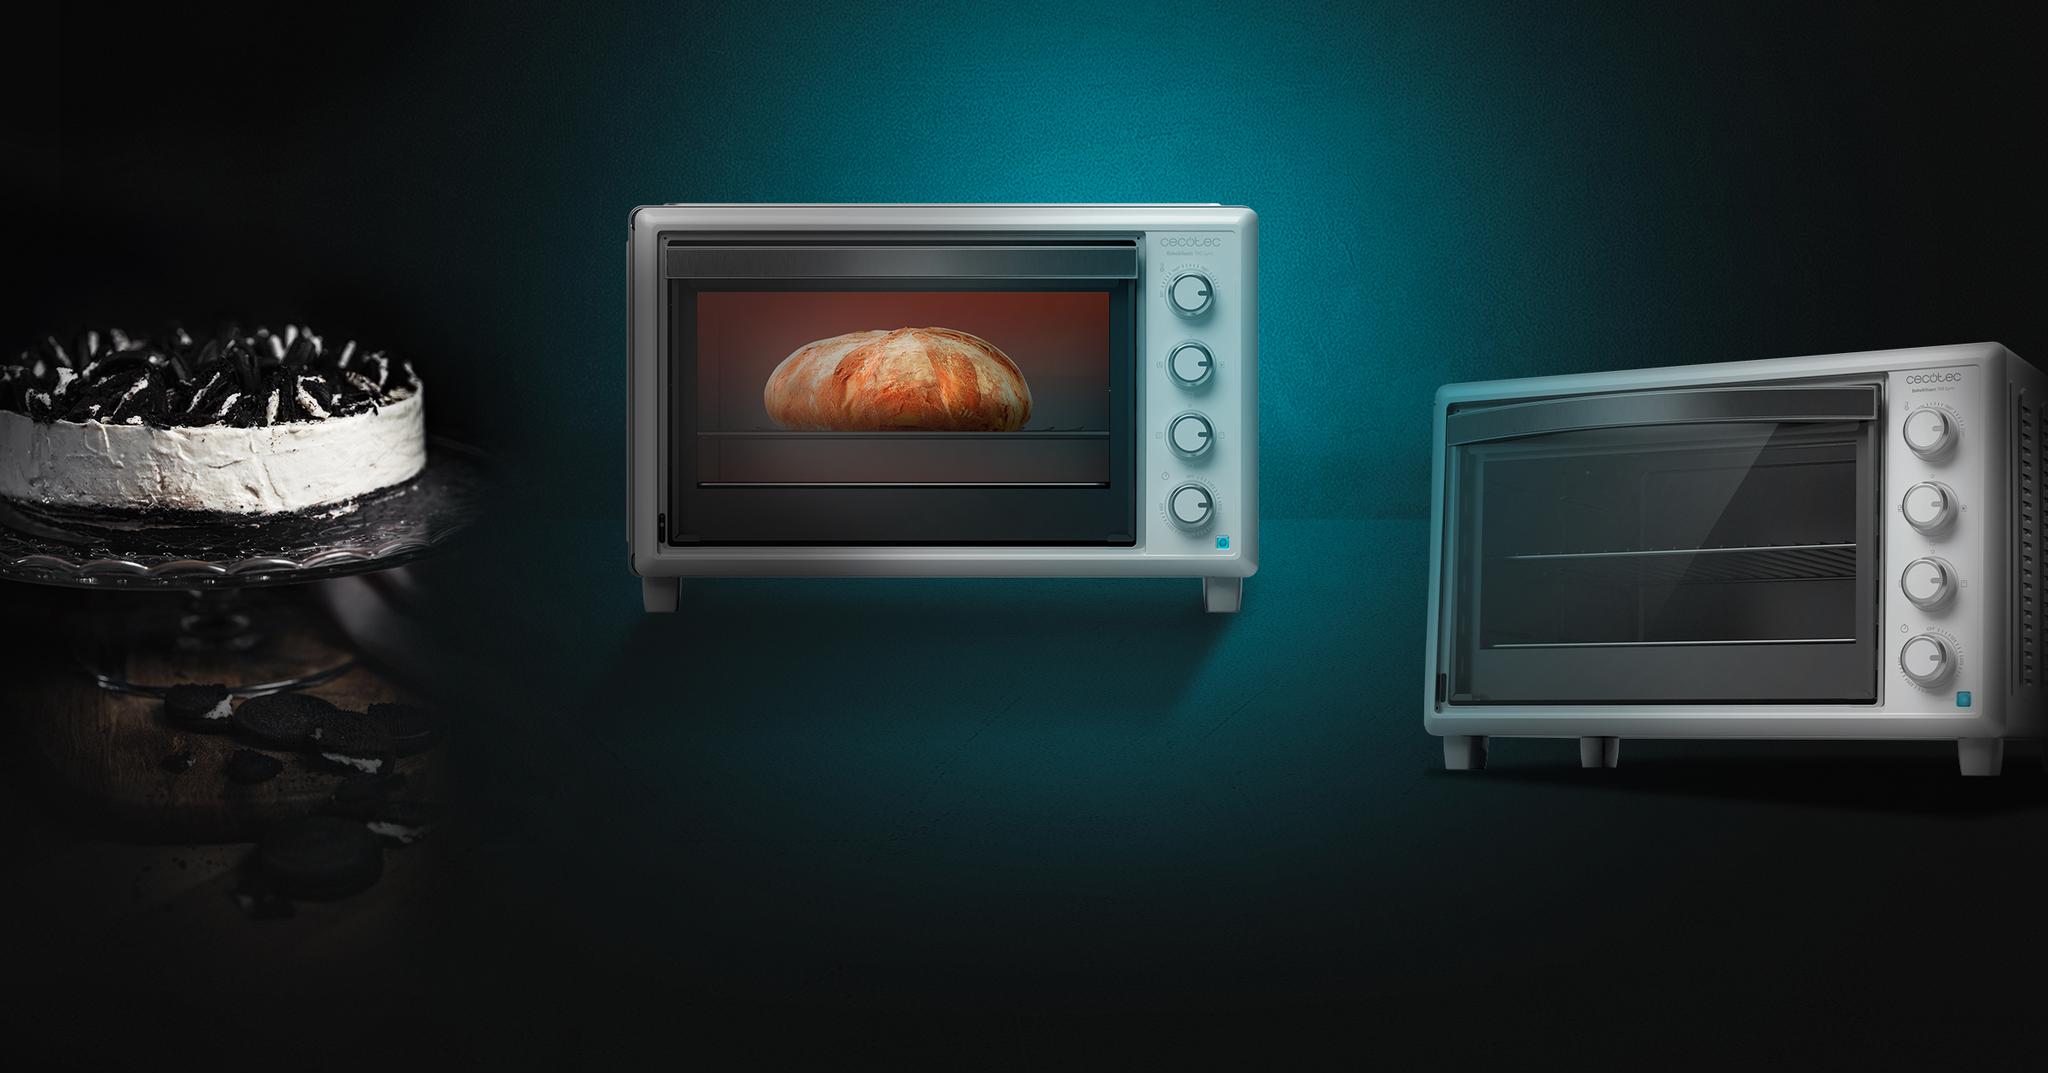 Immagine in primo piano del prodotto Bake&Toast 790 Gyro